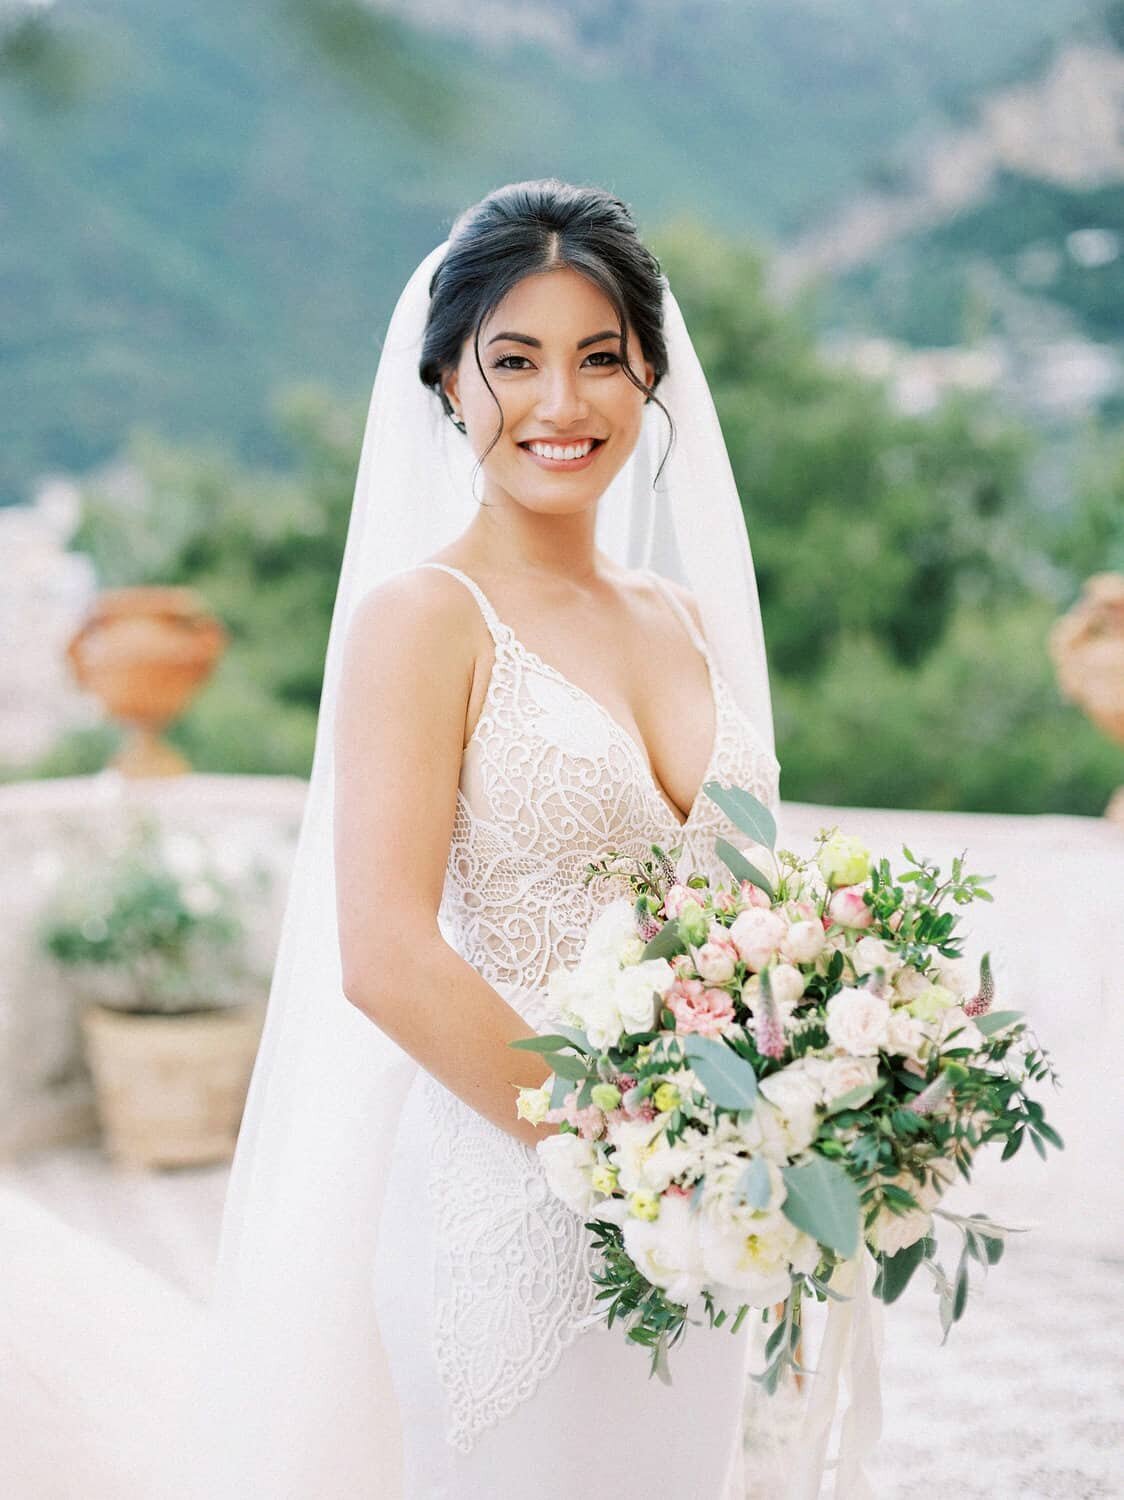 Positano-wedding-villa-San-Giacomo-bride-asian-by-Julia-Kaptelova-Photography-248